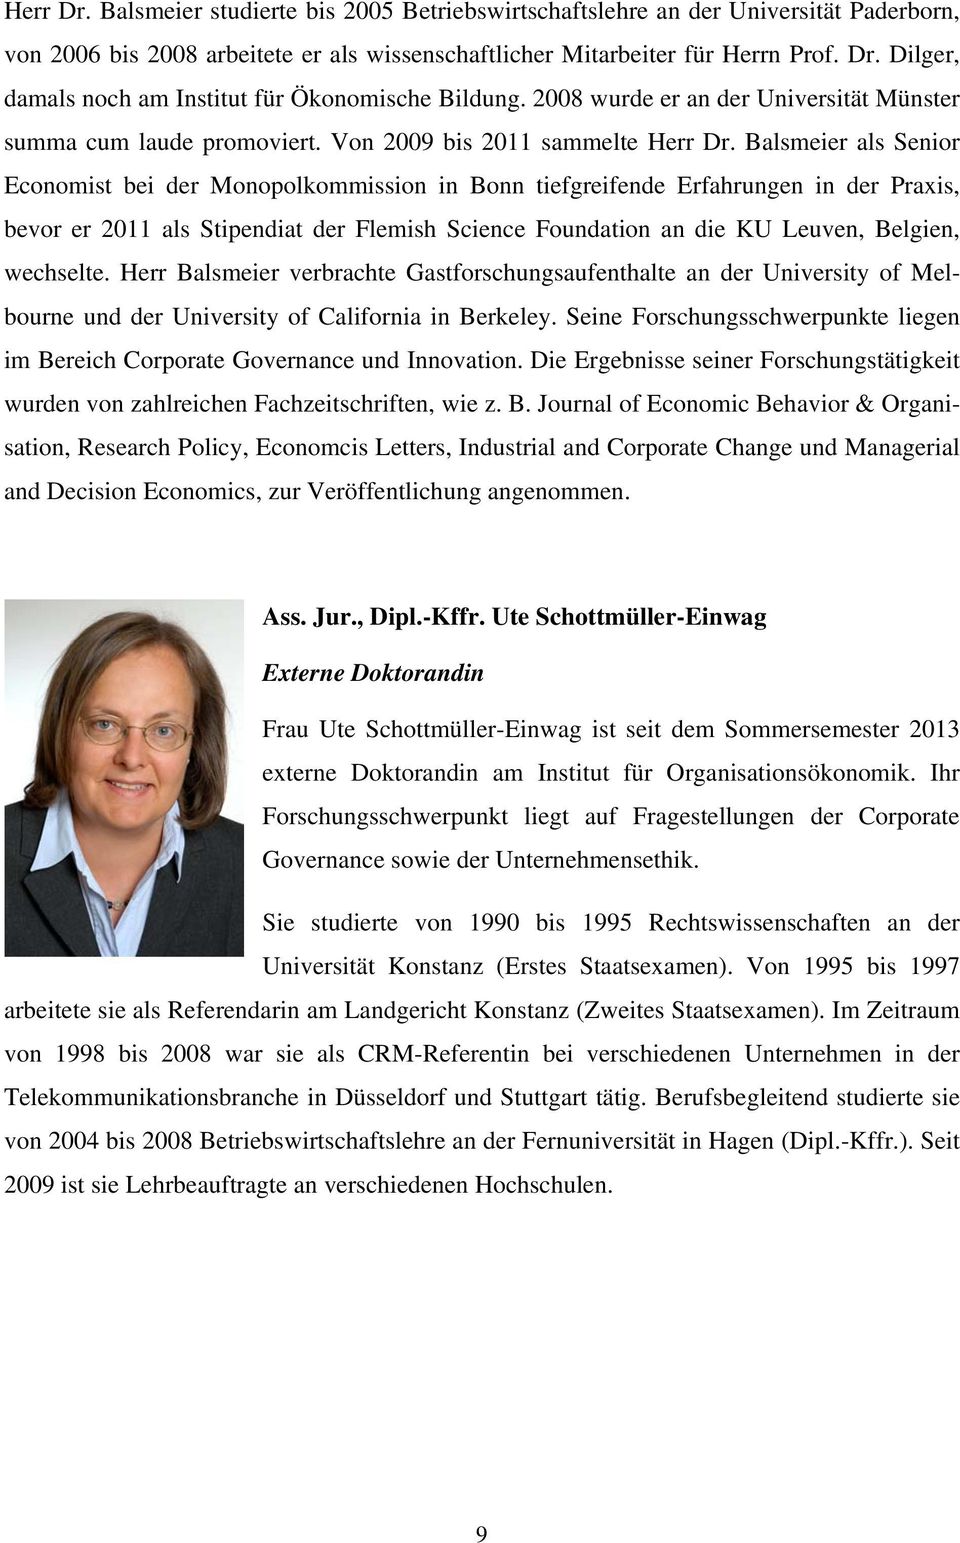 Balsmeier als Senior Economist bei der Monopolkommission in Bonn tiefgreifende Erfahrungen in der Praxis, bevor er 2011 als Stipendiat der Flemish Science Foundation an die KU Leuven, Belgien,